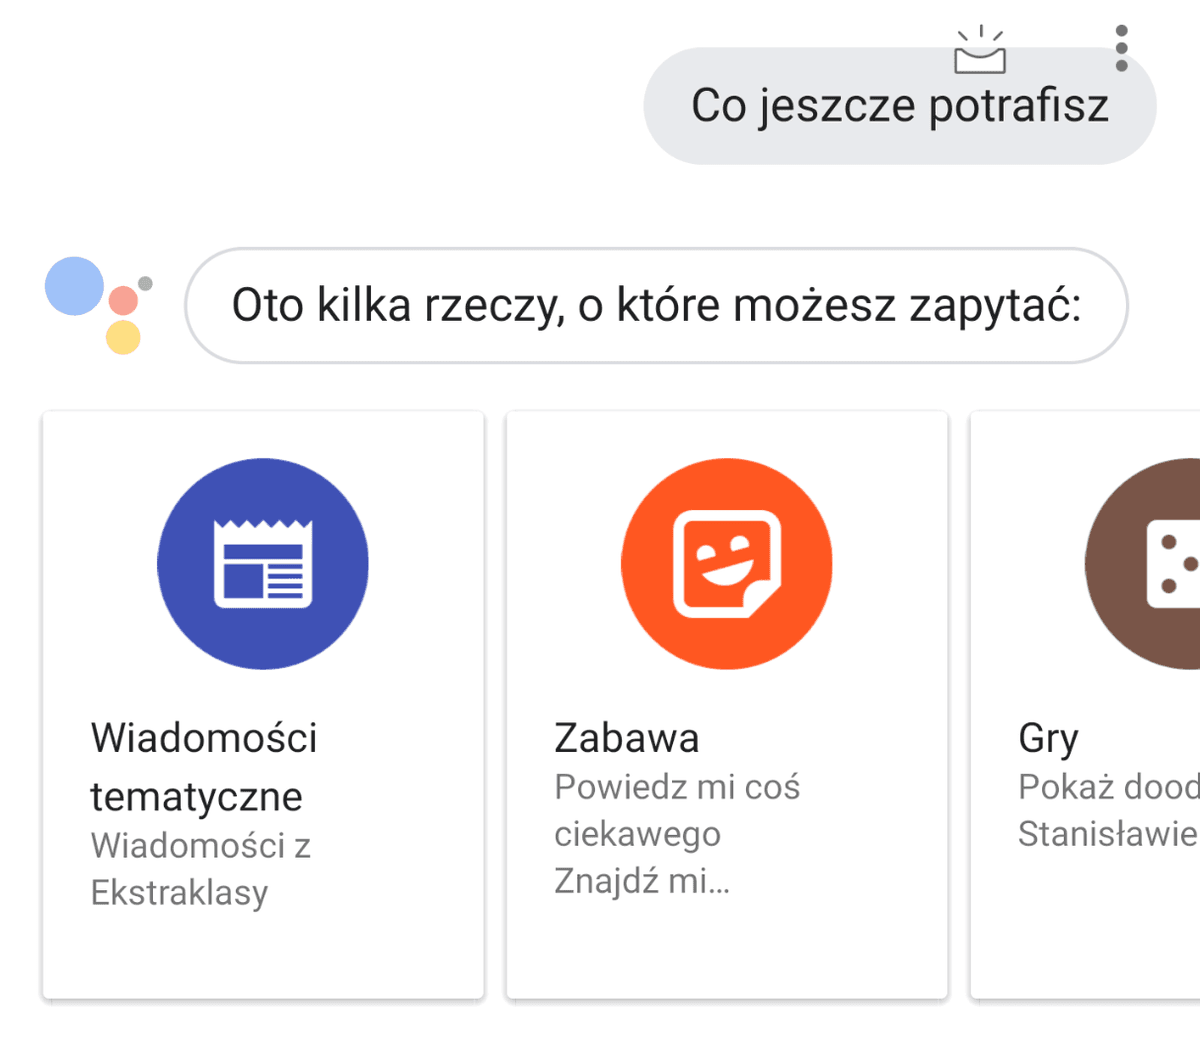 Jak działa Asystent Google w języku polskim? class="wp-image-813617" title="Jak działa Asystent Google w języku polskim?" 